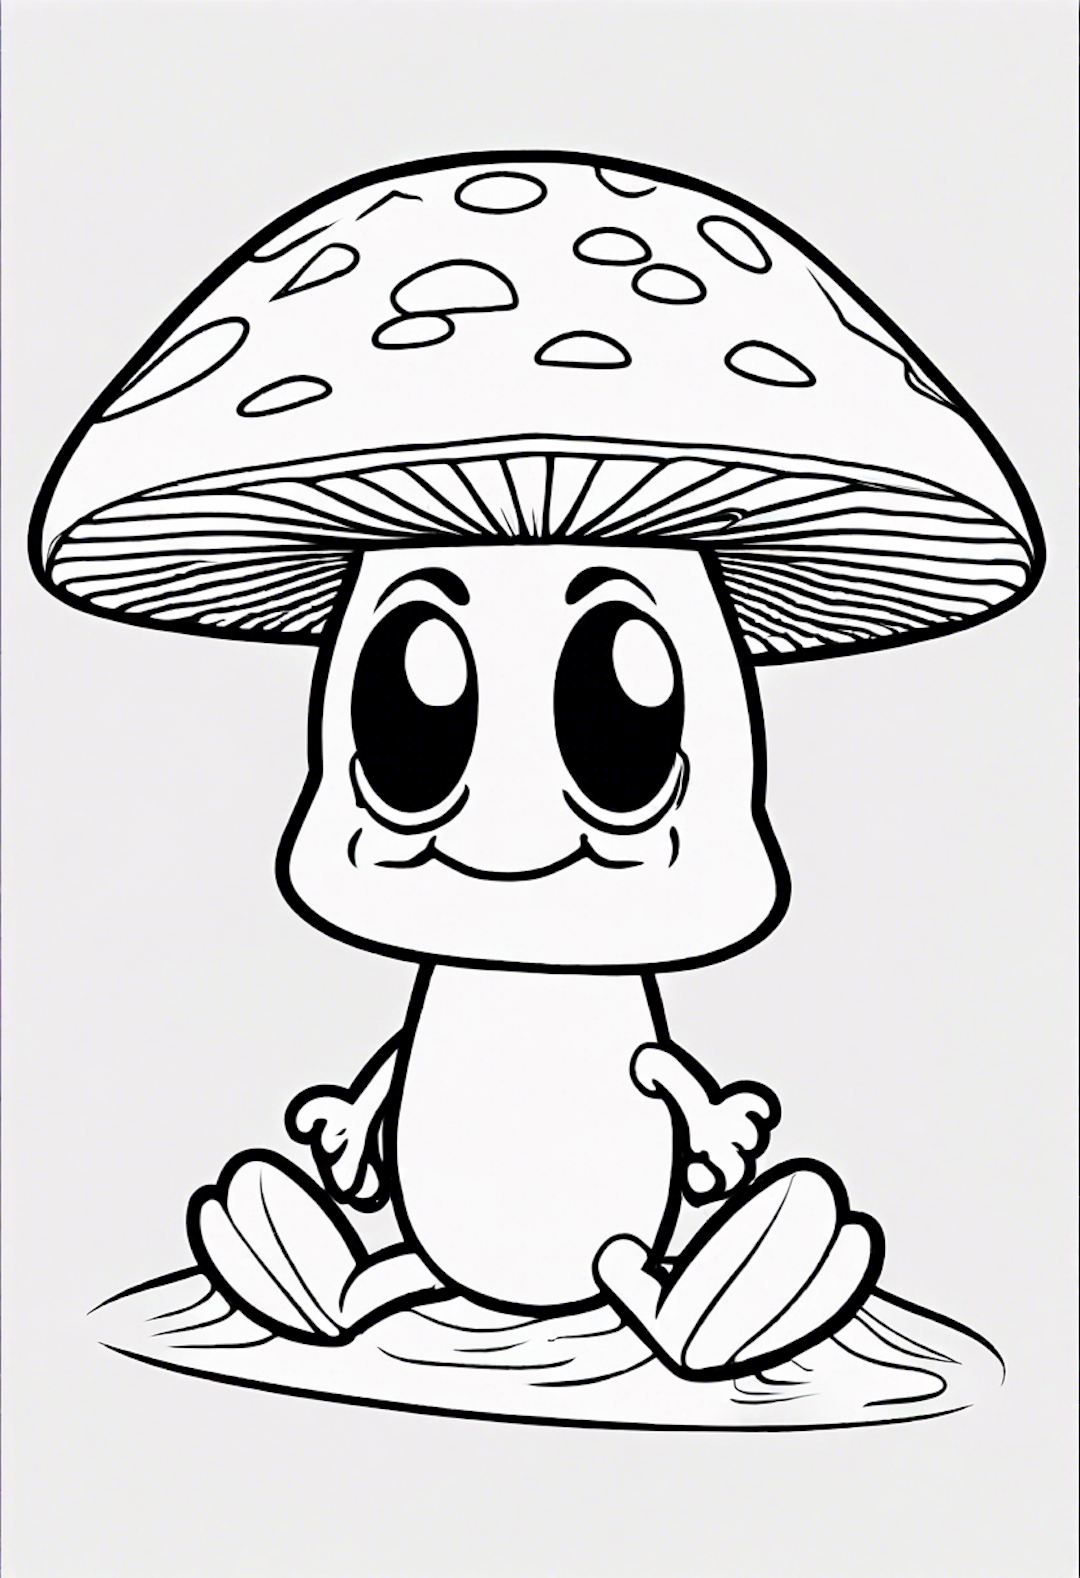 A Cartoon Mushroom Surfing